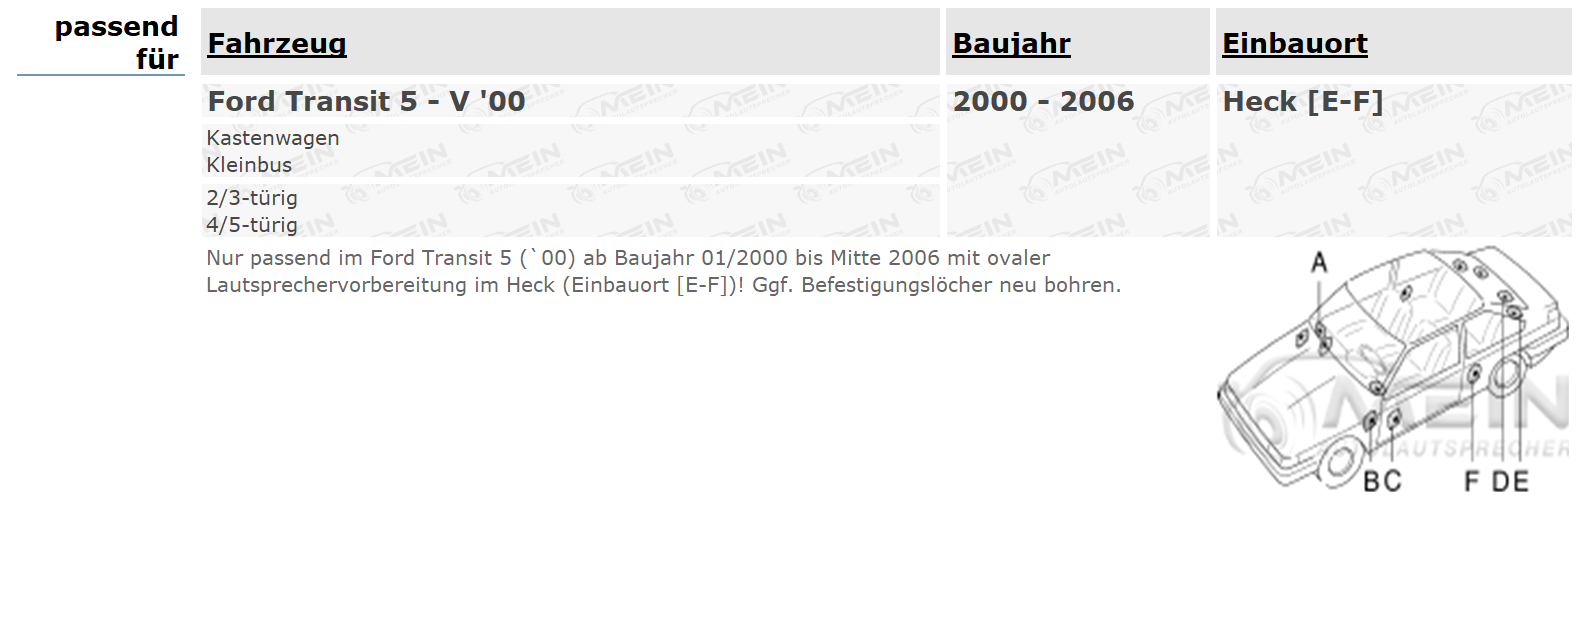 AUTO LAUTSPRECHER für FORD TRANSIT 5 - V '00 2000-2006 Heck Hinten 165